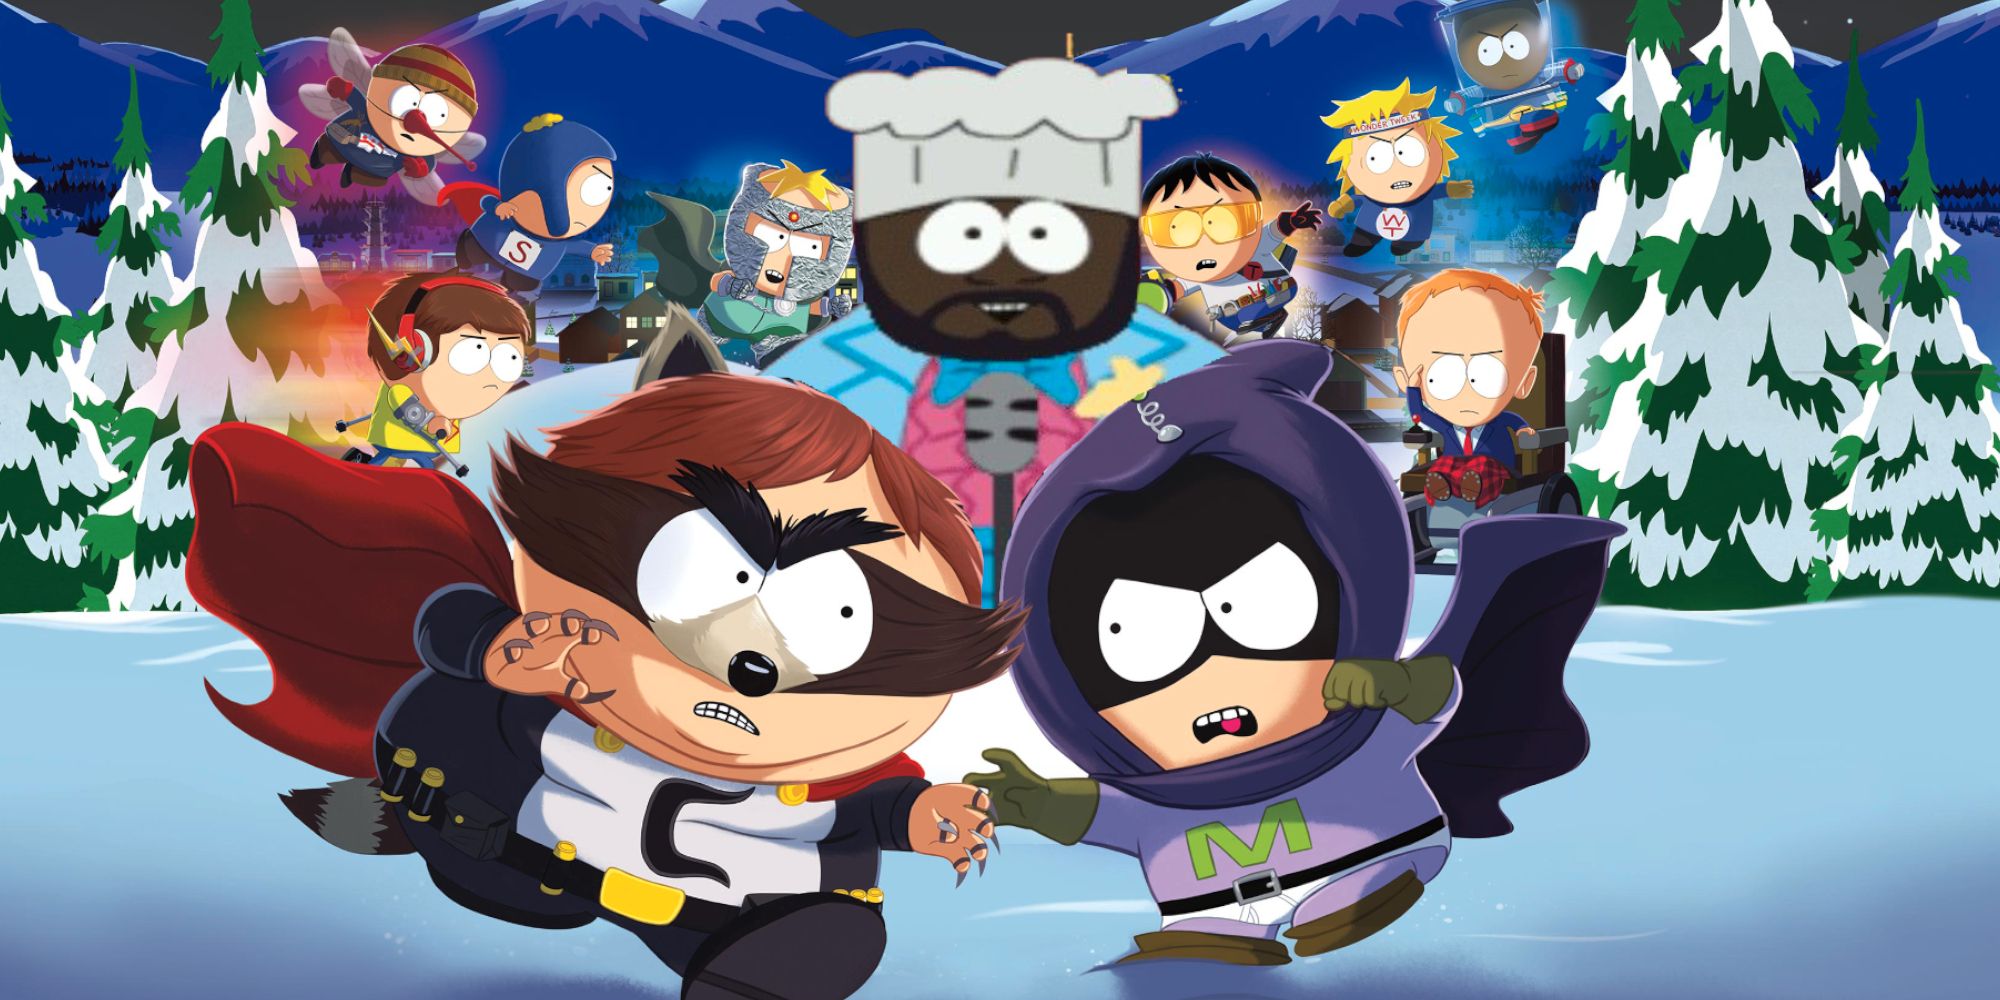 El nuevo juego de South Park debería ser una secuela de Chef’s Luv Shack